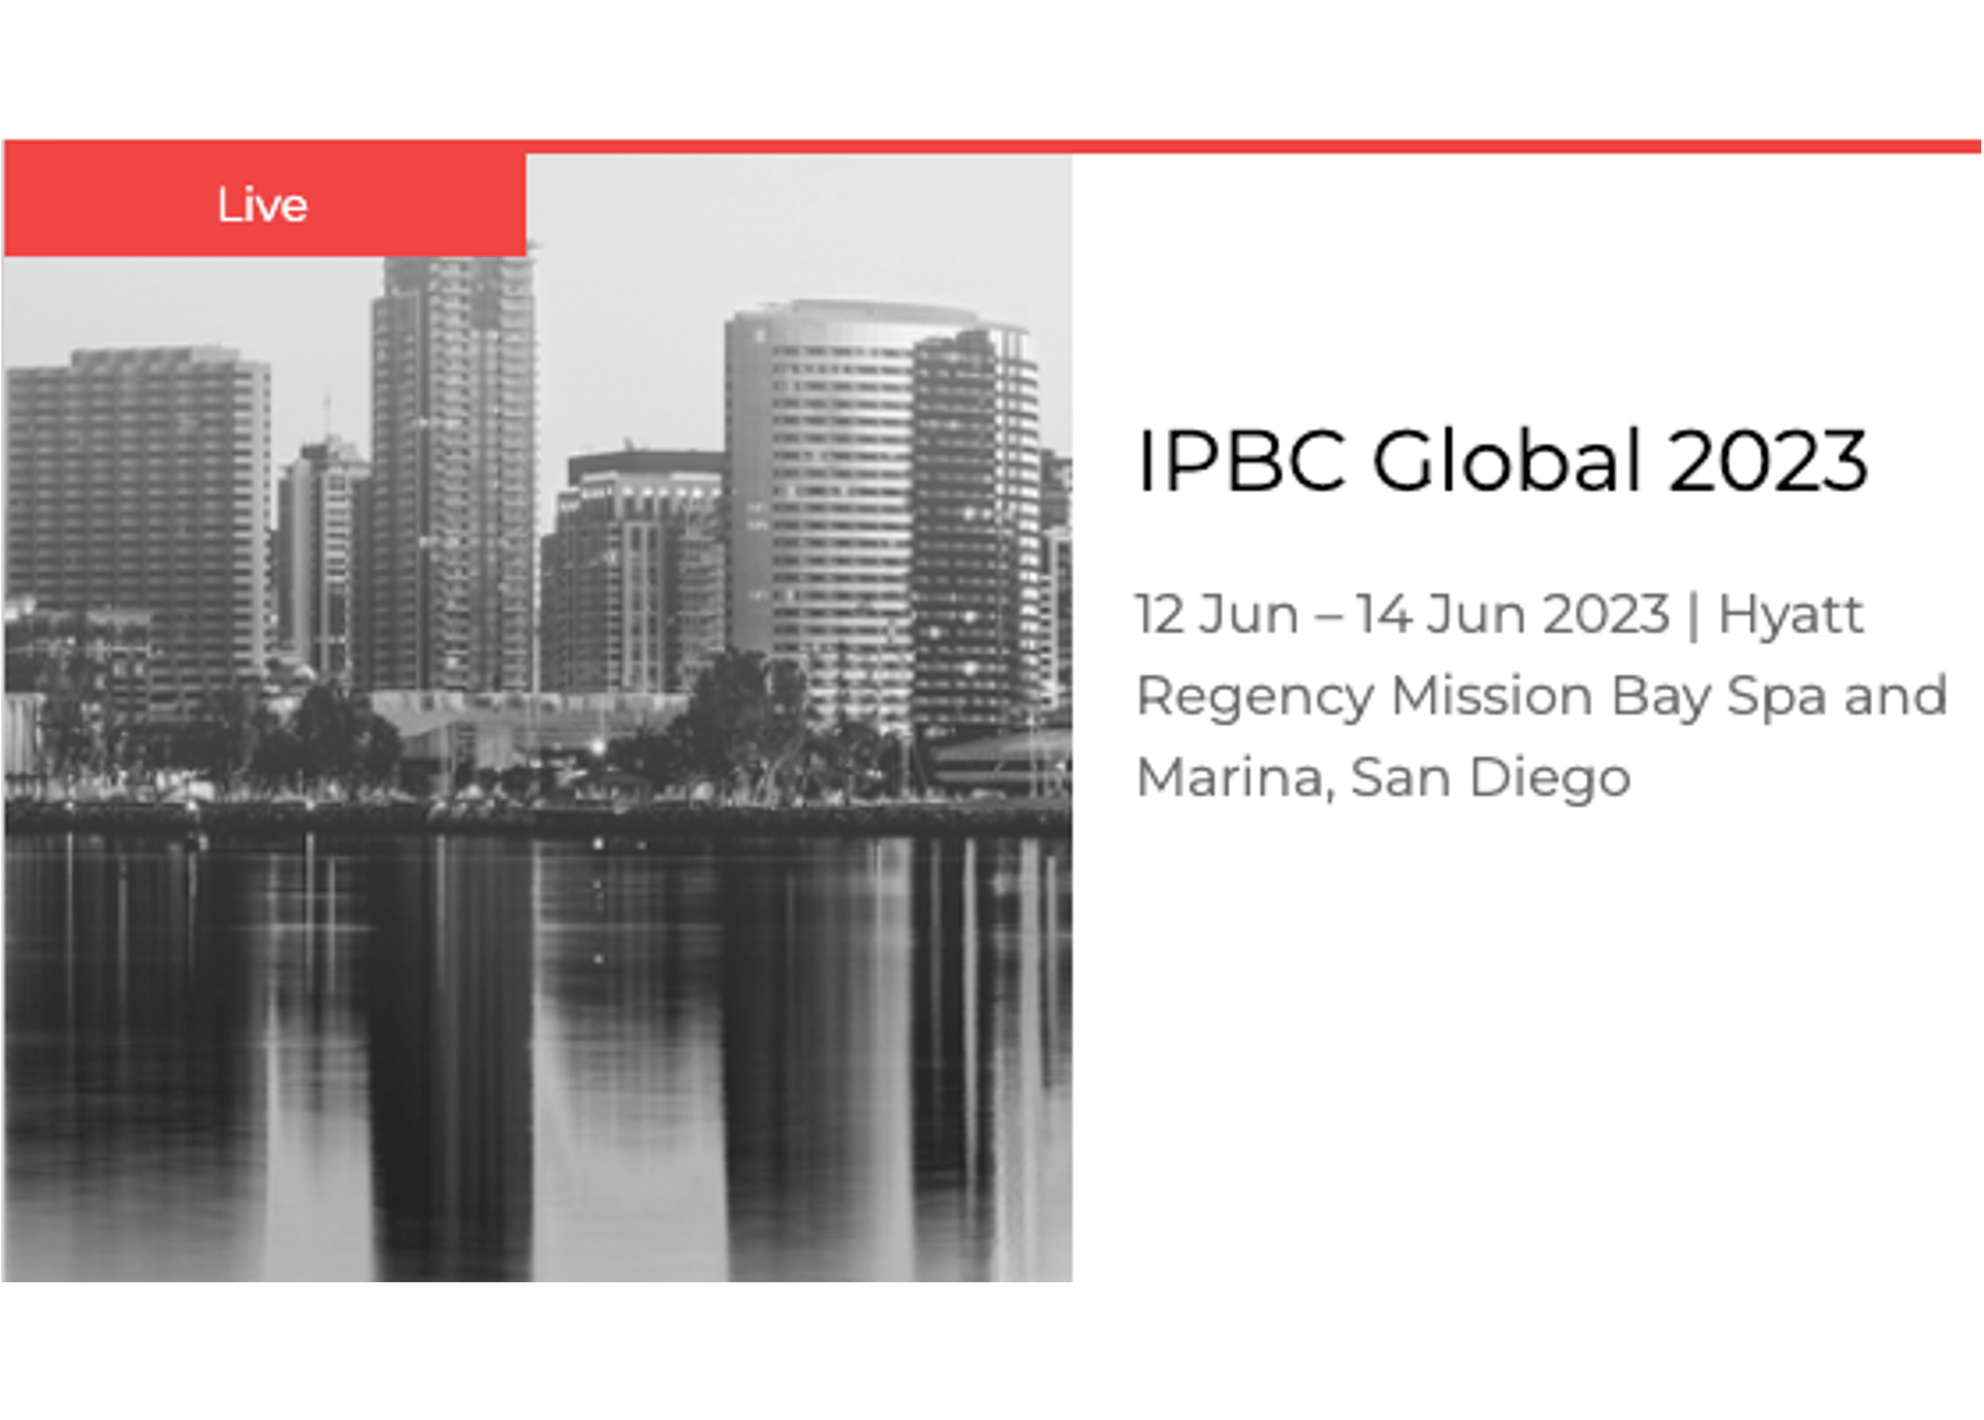 IPBC Global 2023